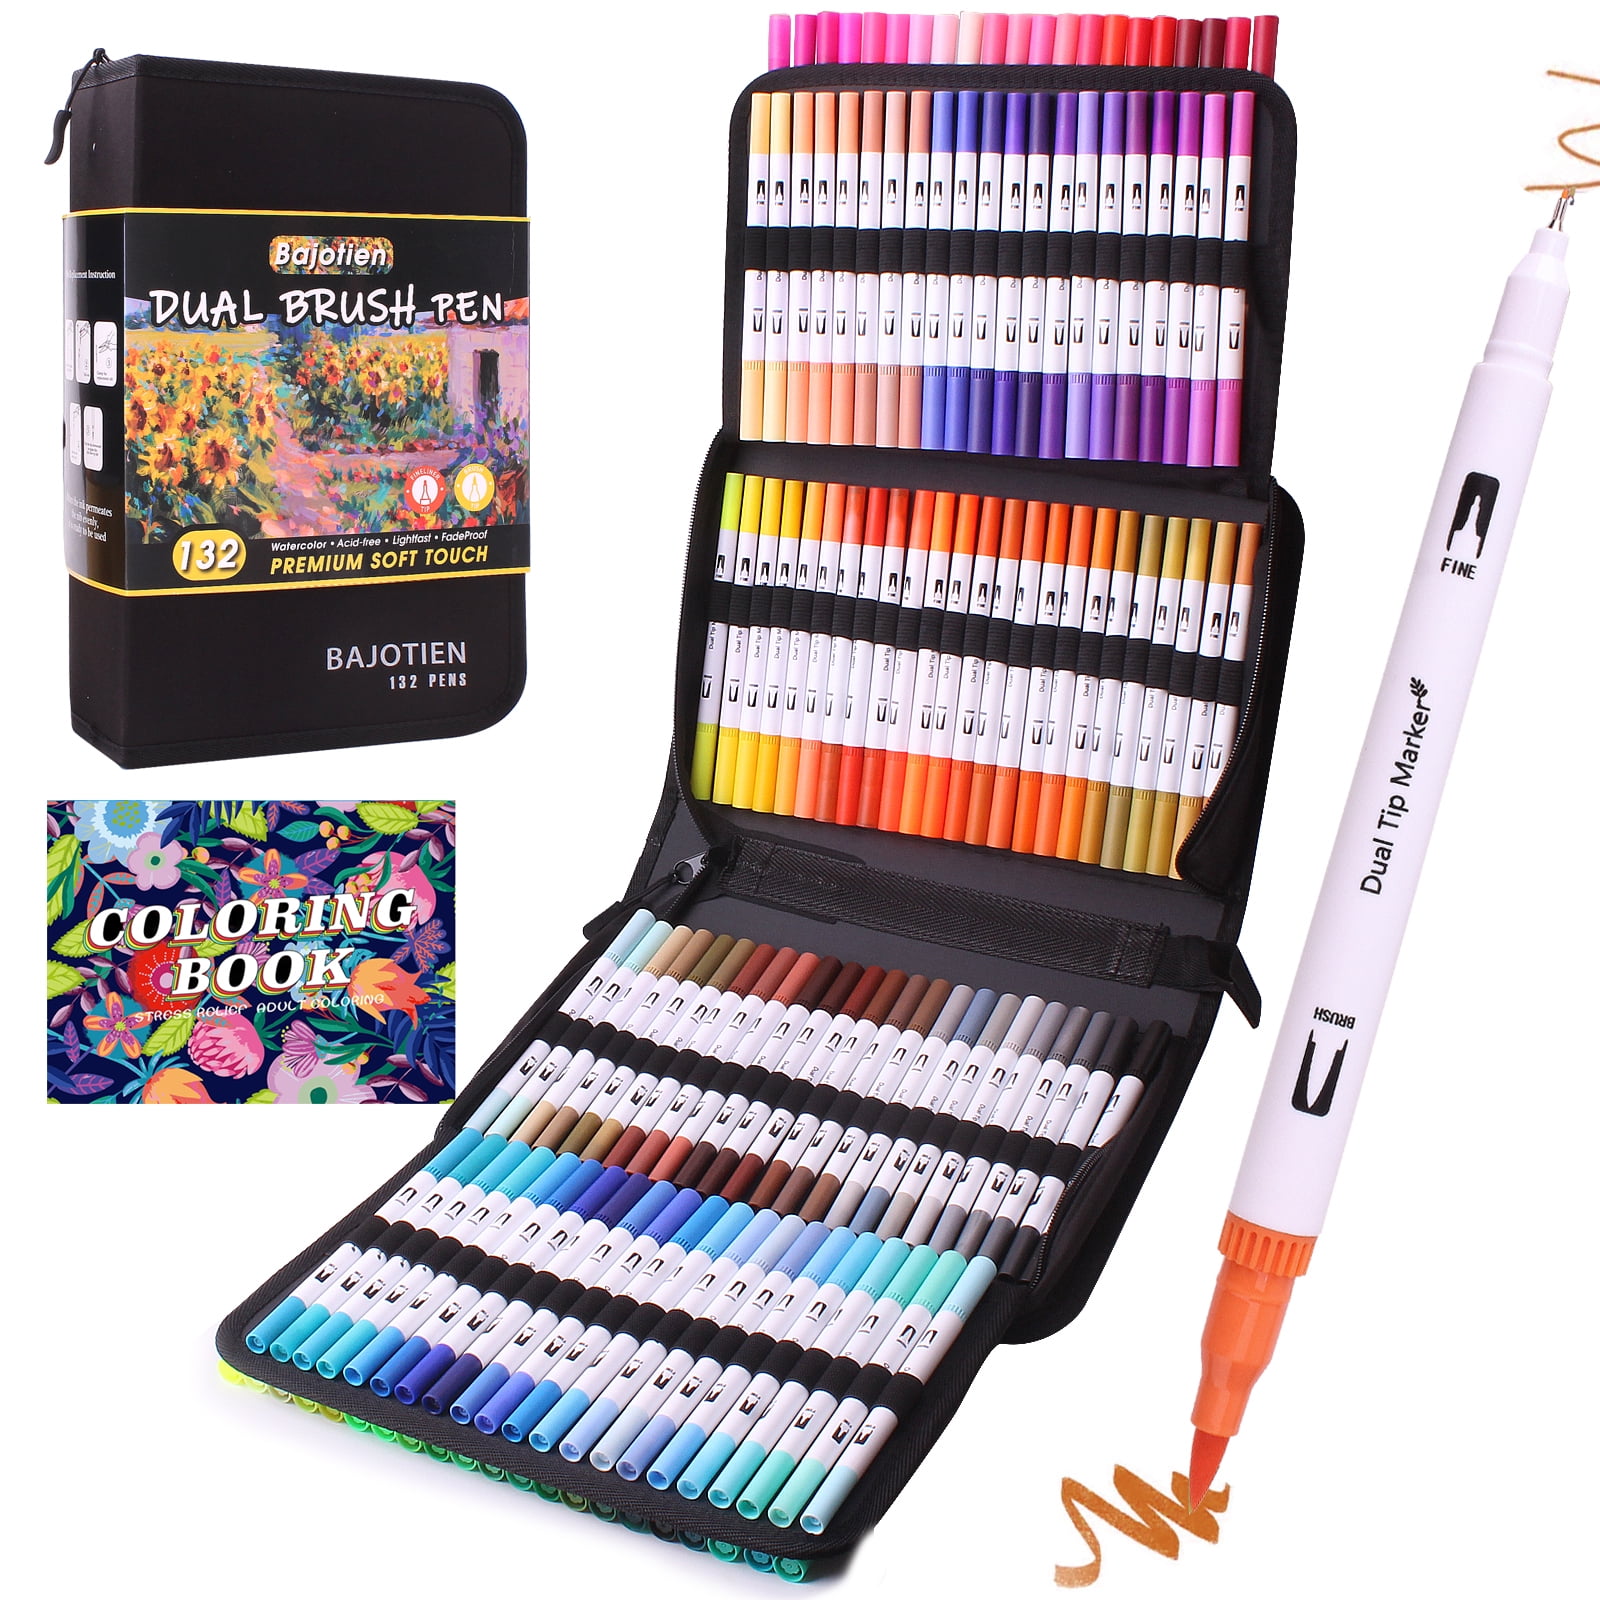 Color Block Pens - Set of 2 - Lilac + Cornflower – DesignWorks Ink